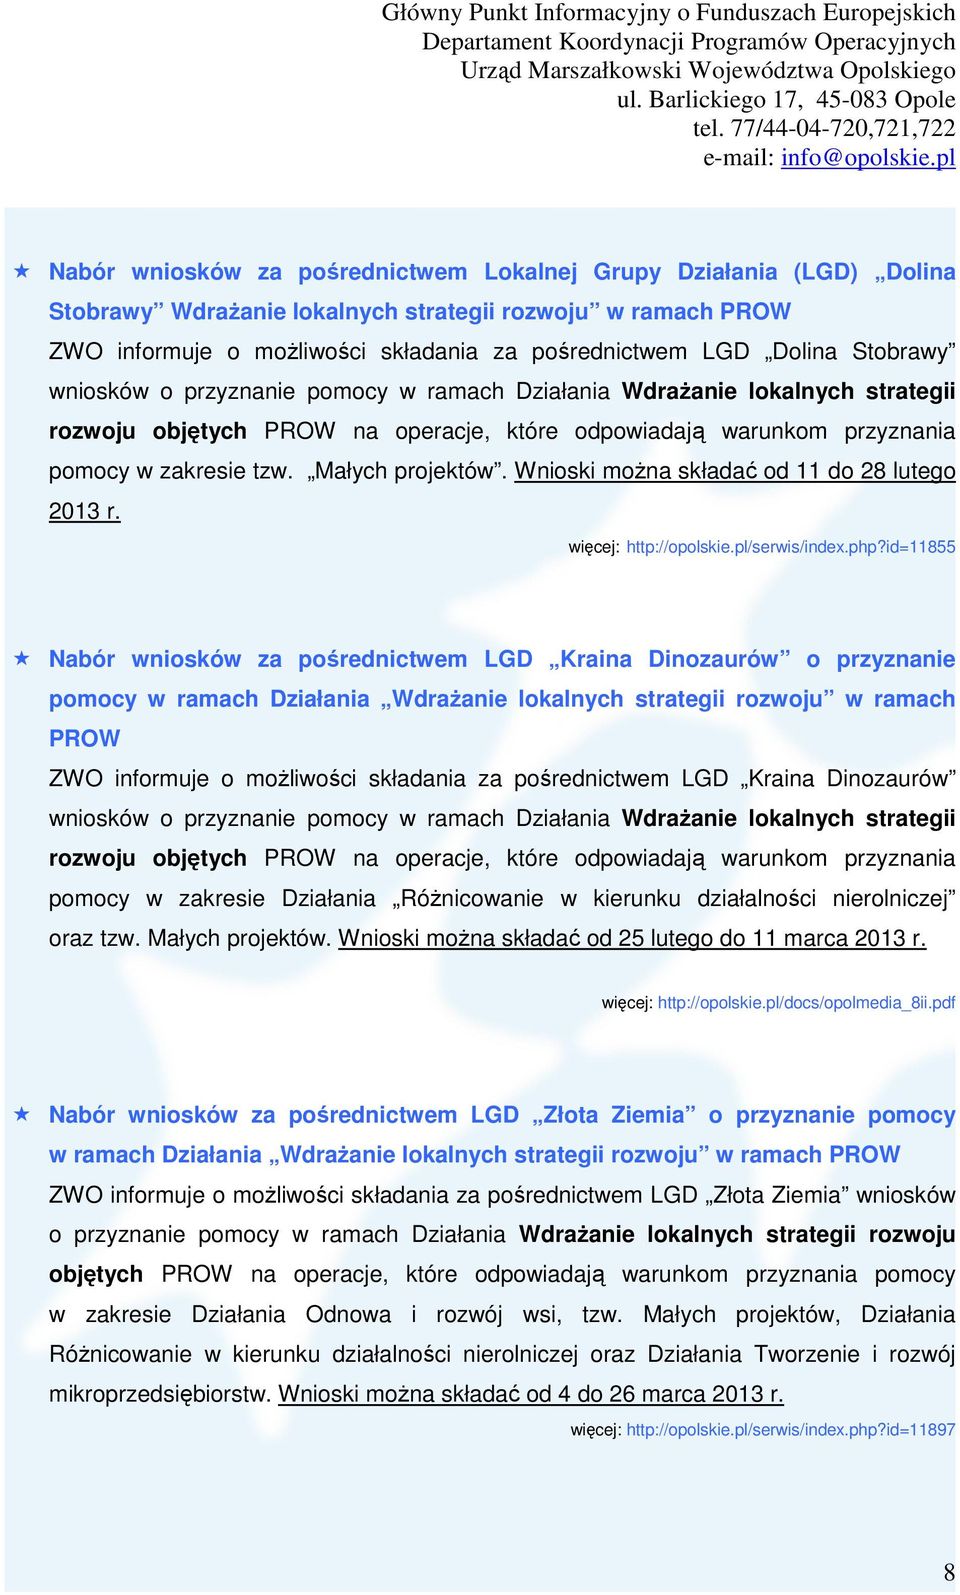 Wnioski można składać od 11 do 28 lutego 2013 r. więcej: http://opolskie.pl/serwis/index.php?